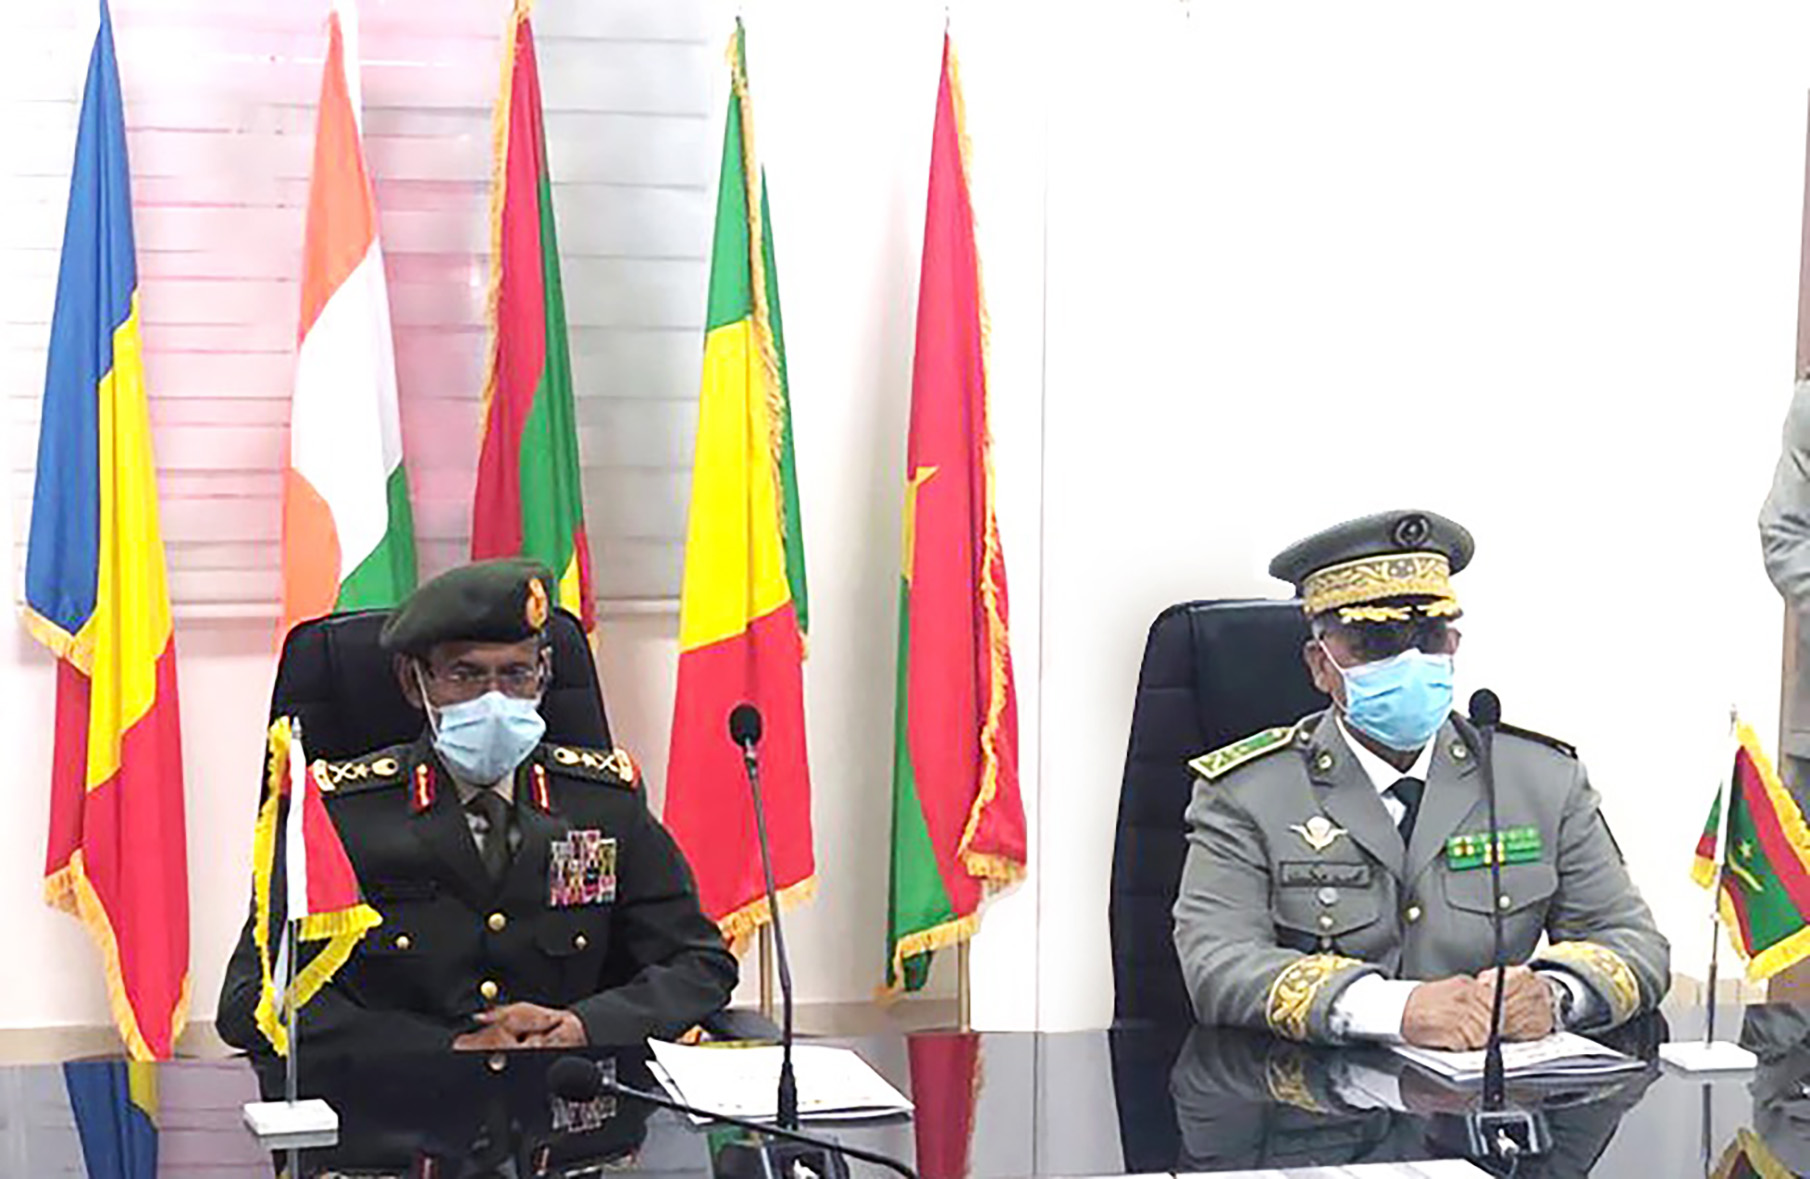 الرئيس الموريتاني يستقبل رئيس أركان القوات المسلحة ويمنحه وسام كوماندور في نظام الاستحقاق الوطني